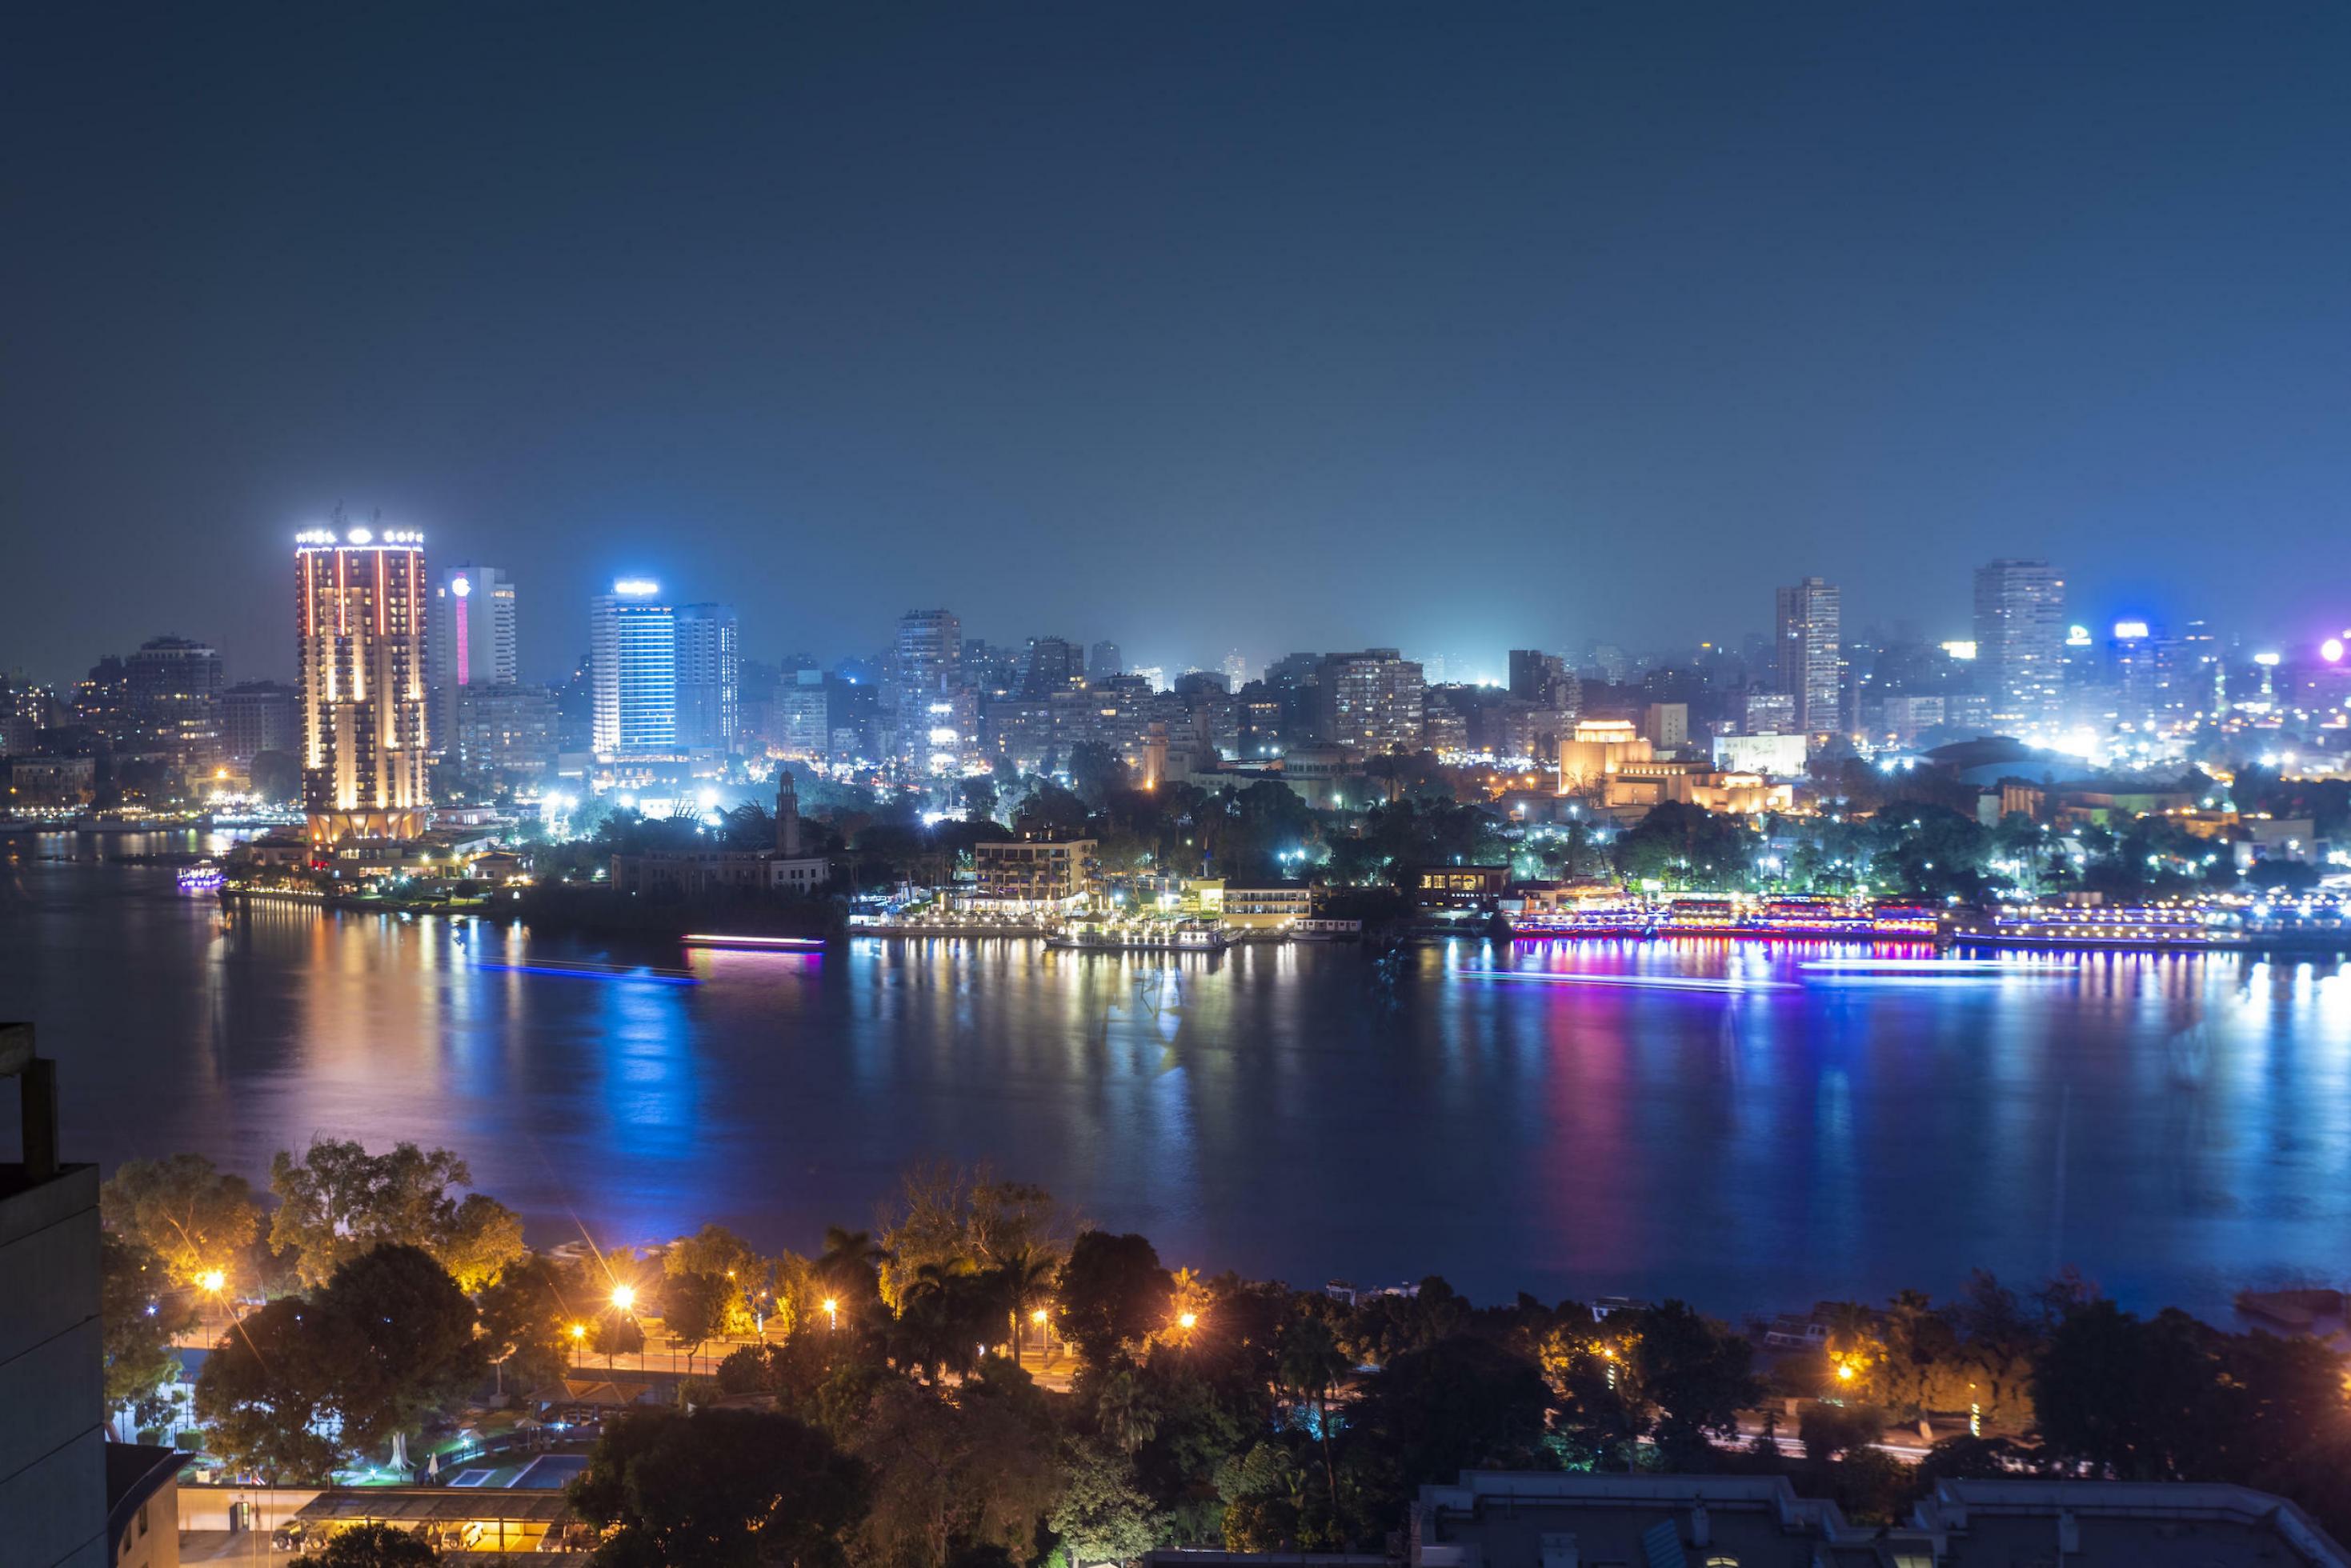 Die Skyline von Kairo bei Nacht mit dem Nil im Vordergrund.